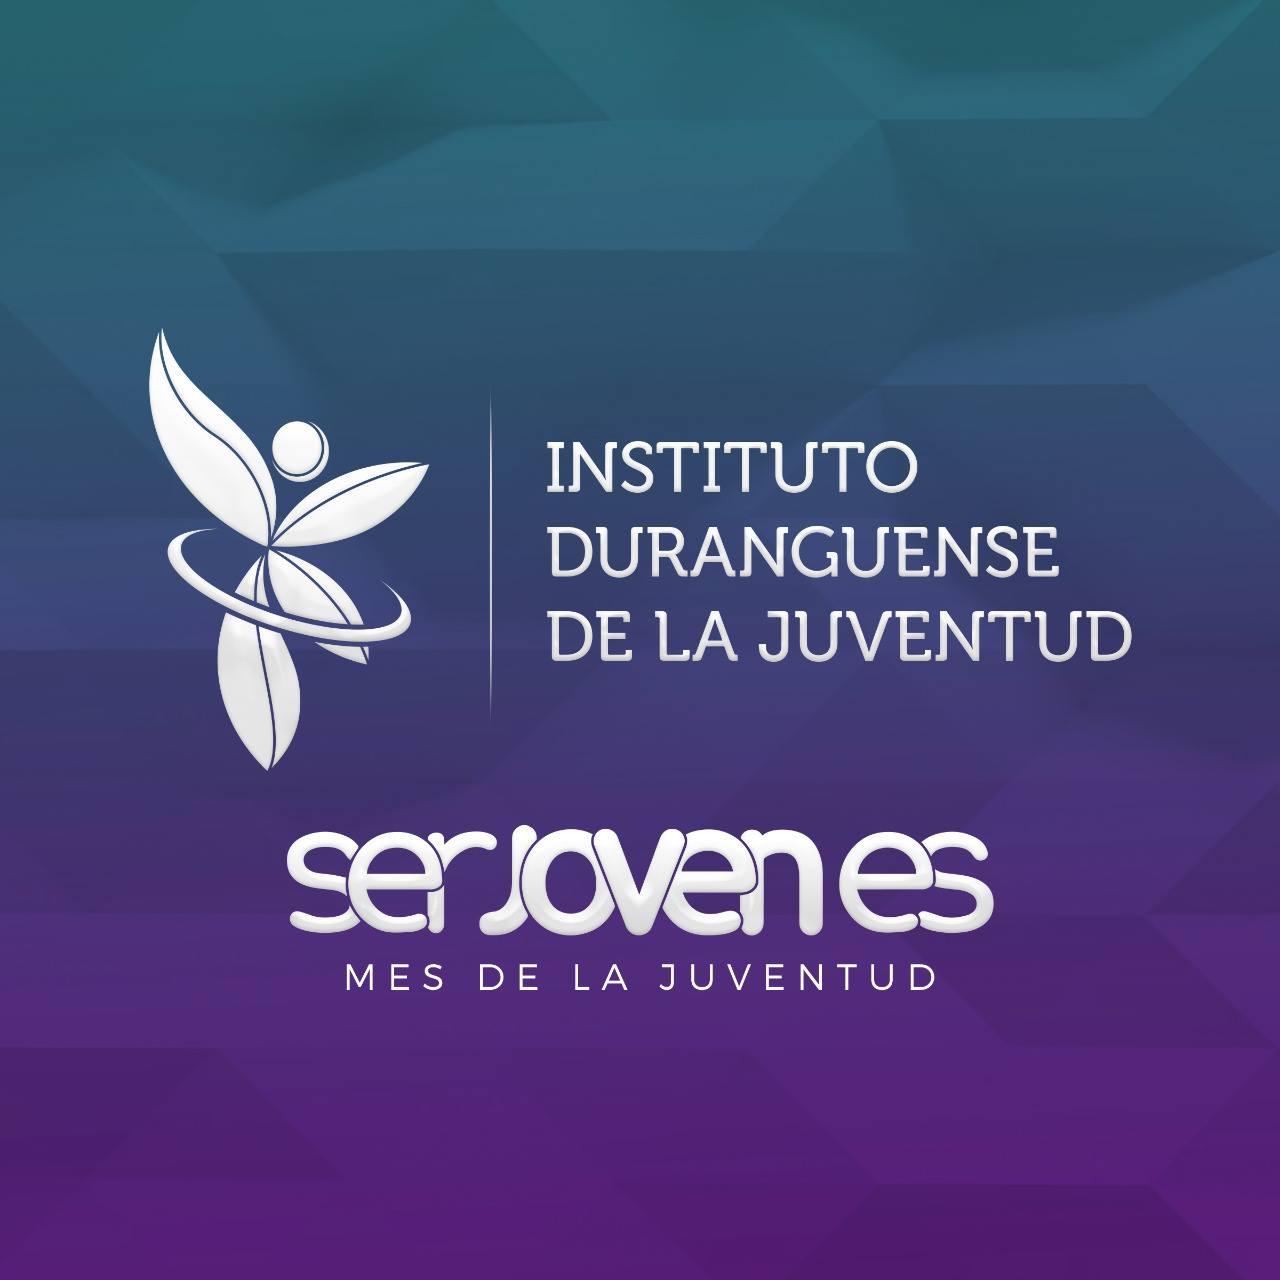 Instituto Duranguense de la Juventud